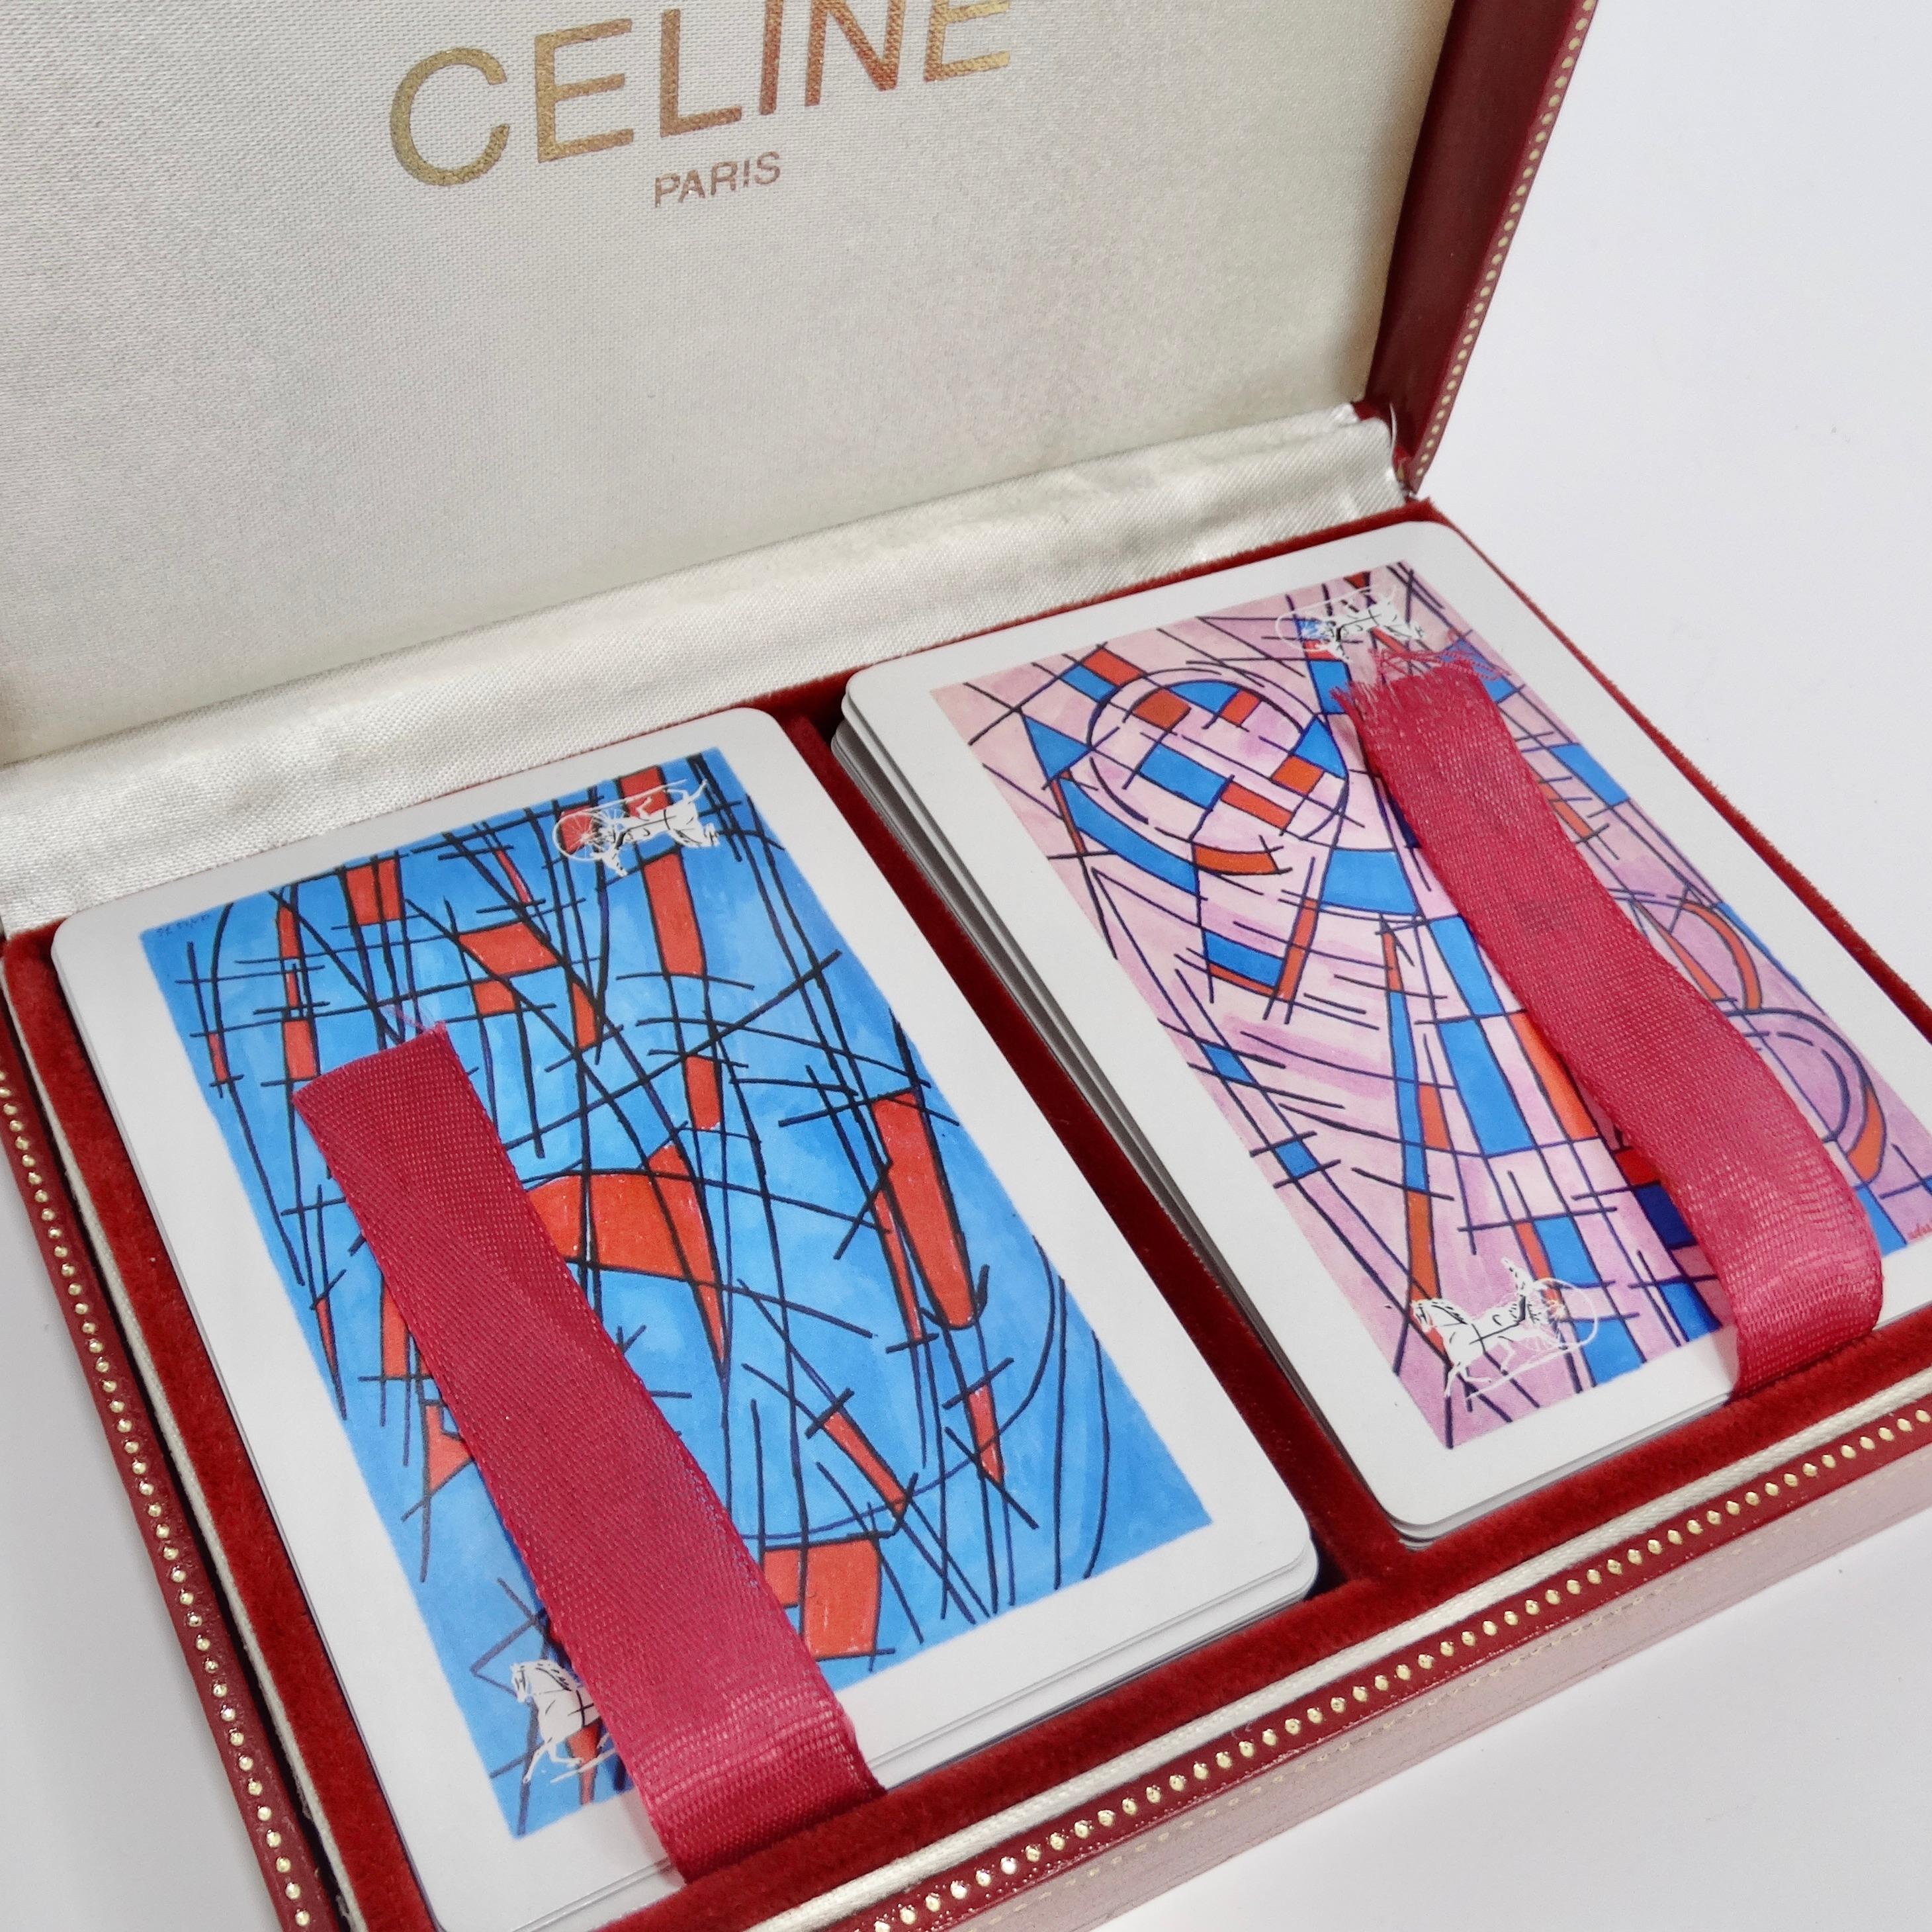 Wir stellen Ihnen das exquisite Celine Spielkartendeck vor, ein klassisches Set aus zwei Spielkarten, das Ihre Spielabende zu neuen Höhen des Luxus und der Raffinesse erheben wird. In ihrer Originalschachtel sind diese Spielkarten nicht nur ein